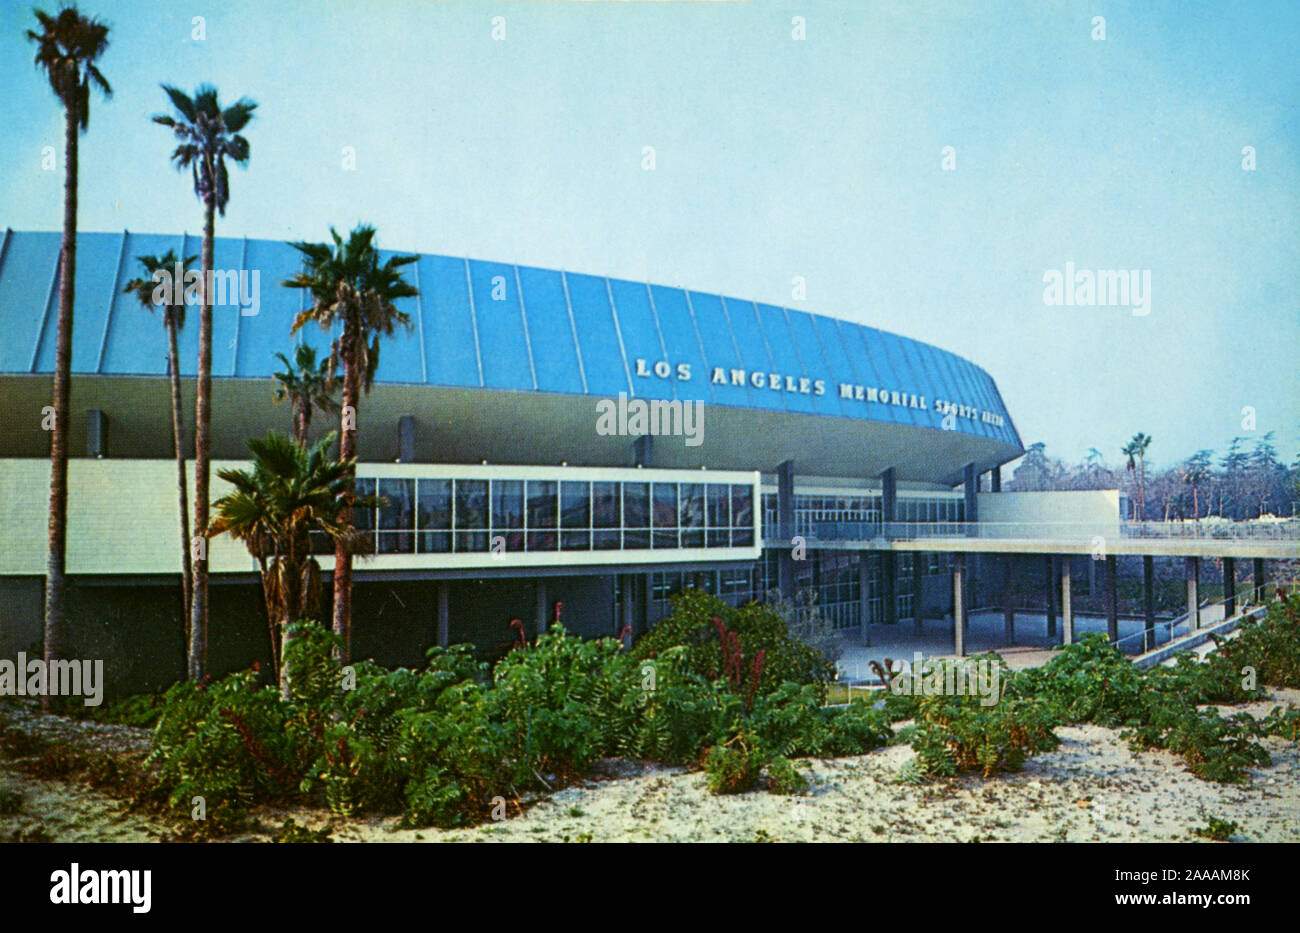 Il Los Angeles Memorial Sports Arena una volta era la casa di NBA L.A. Clippers, altre squadre sportive e molti classici del rock concerti compresi perfromances memorabile di Pink Floyd e Bruce Springsteen. La costruzione non è più attuale. Foto Stock